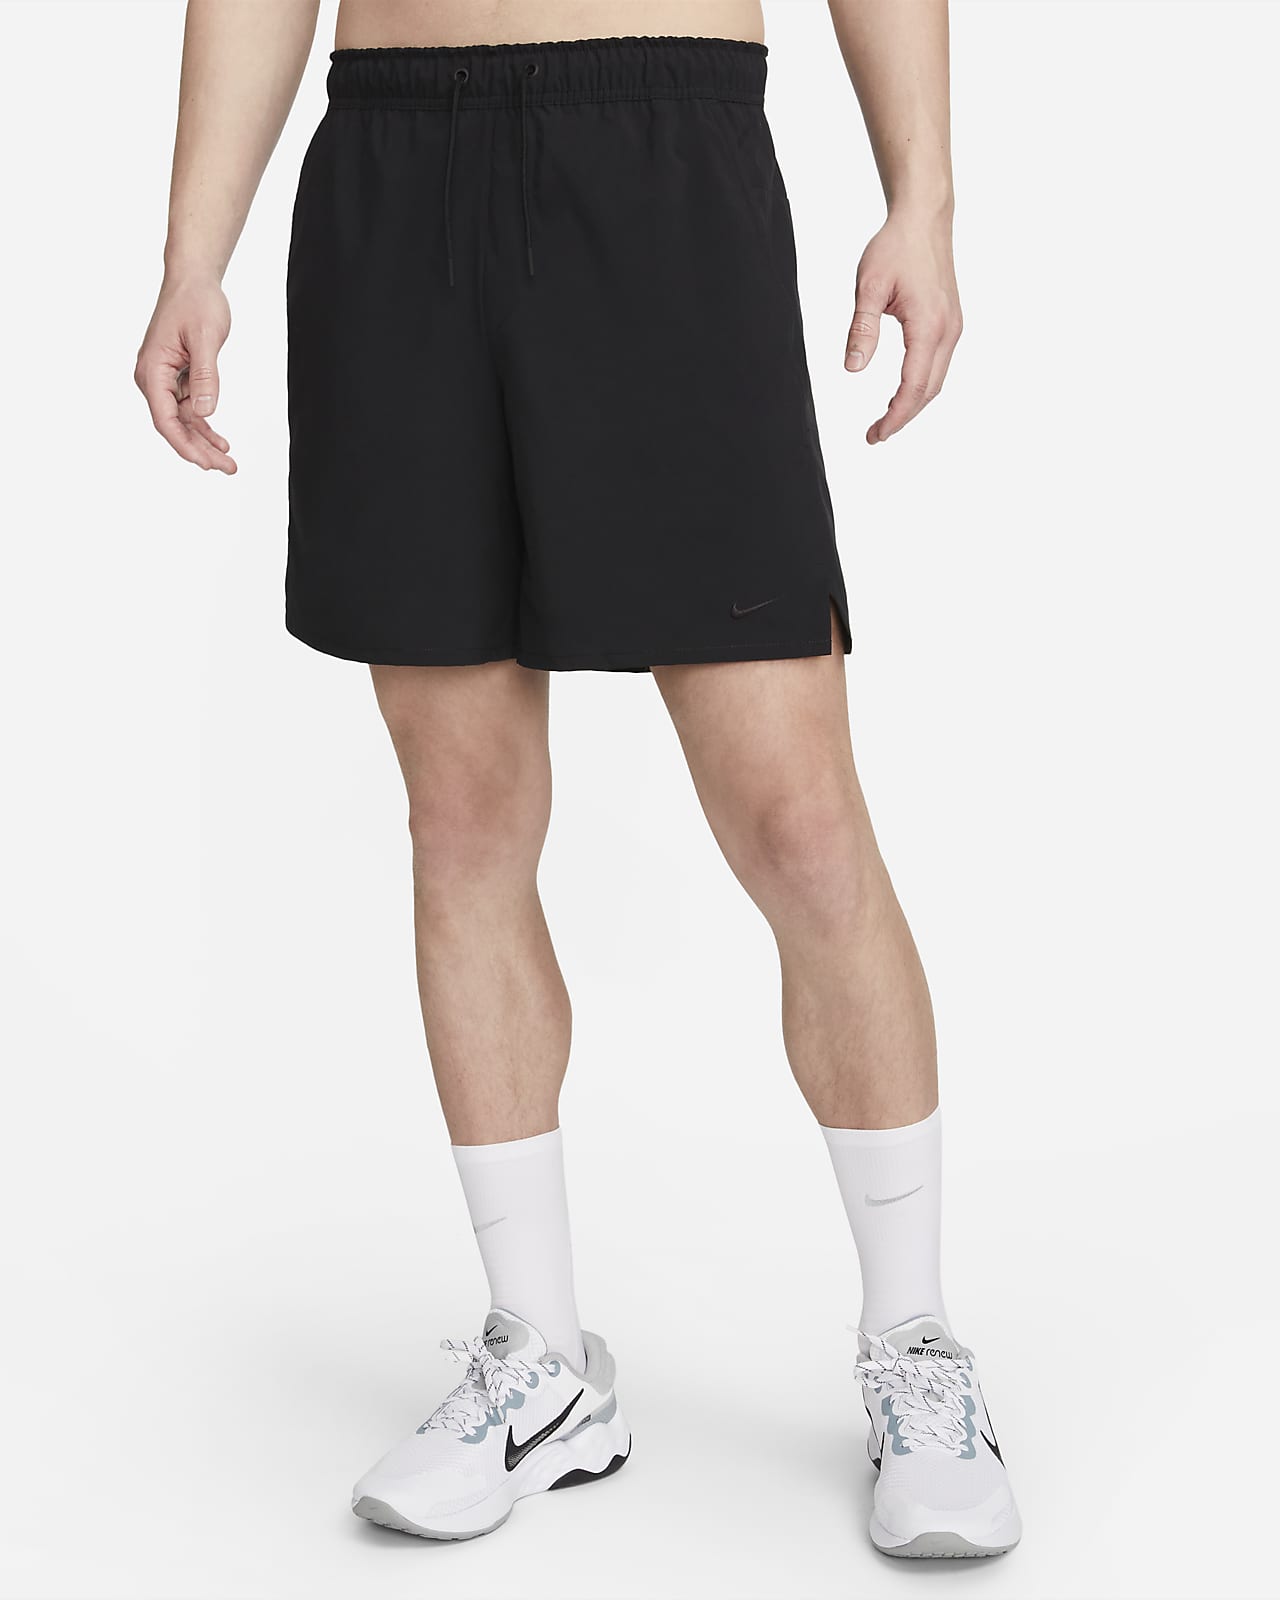 Shorts versatili Dri-FIT non foderati 18 cm Nike Unlimited – Uomo